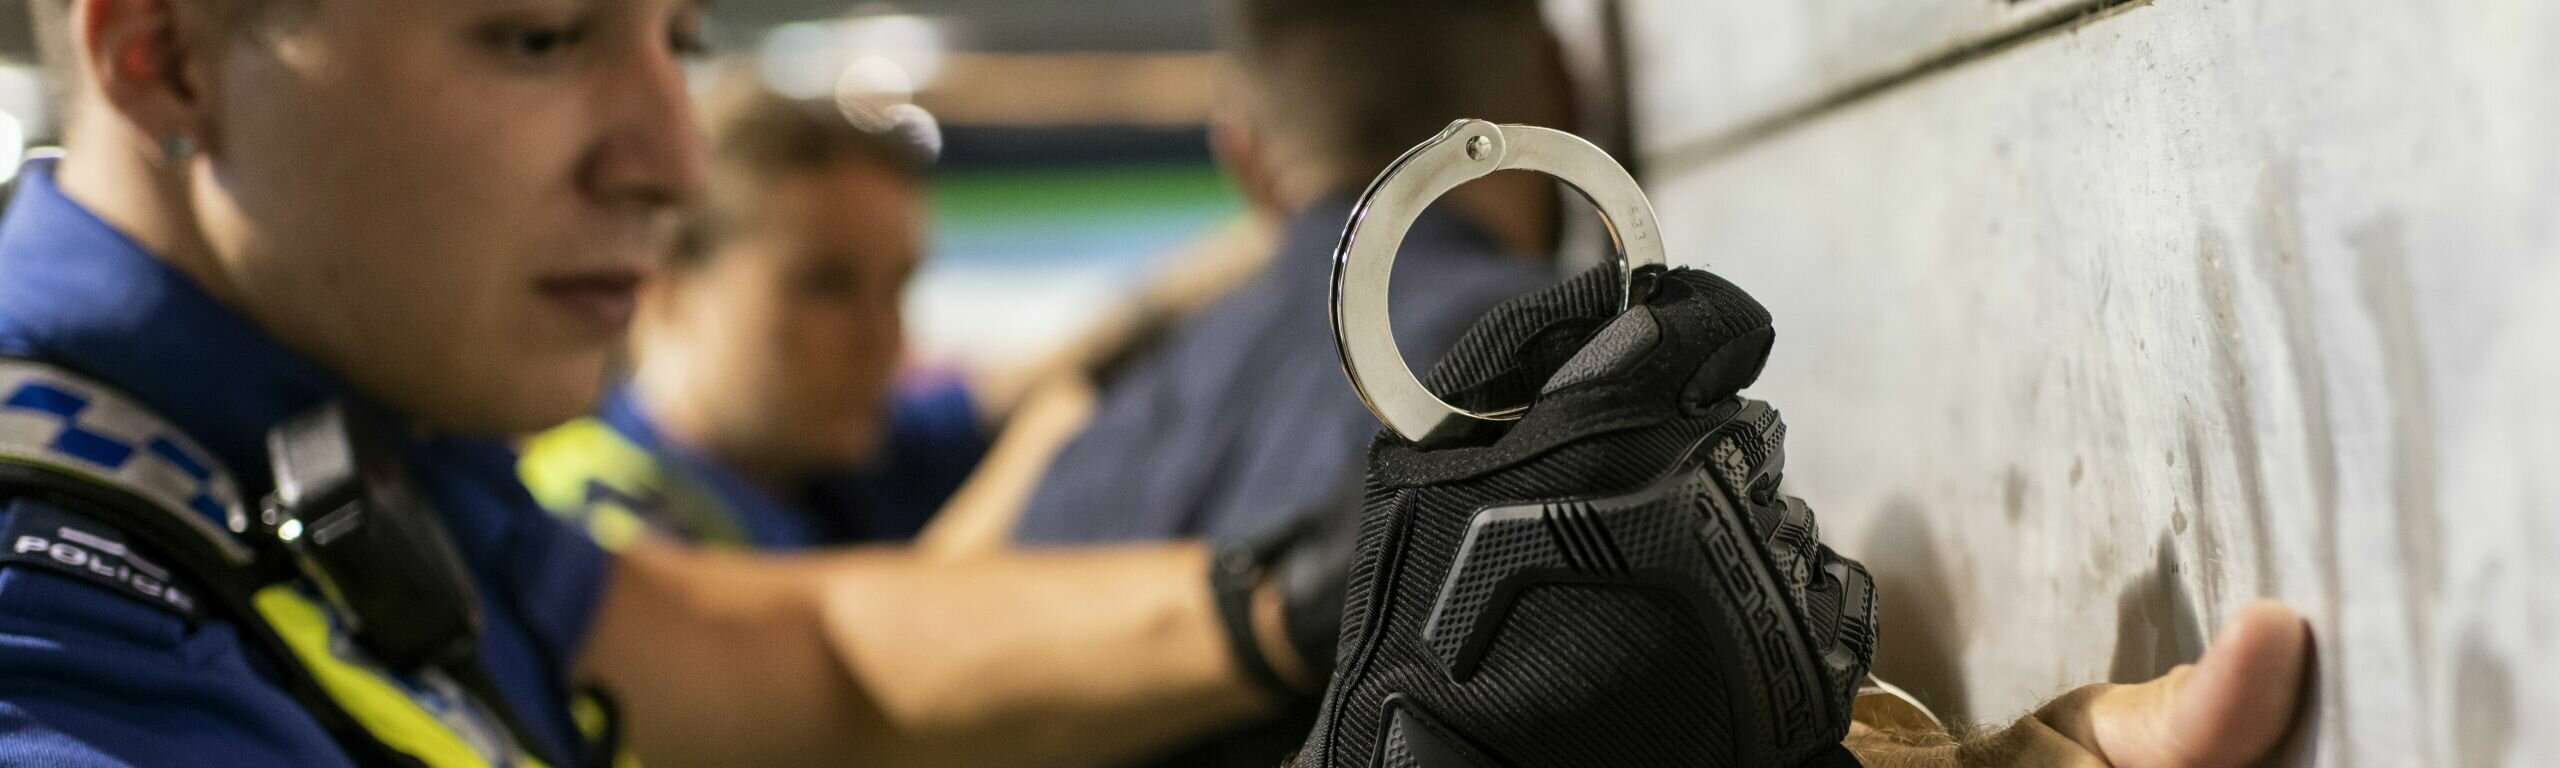 Ein Polizist legt jemandem Handschellen an